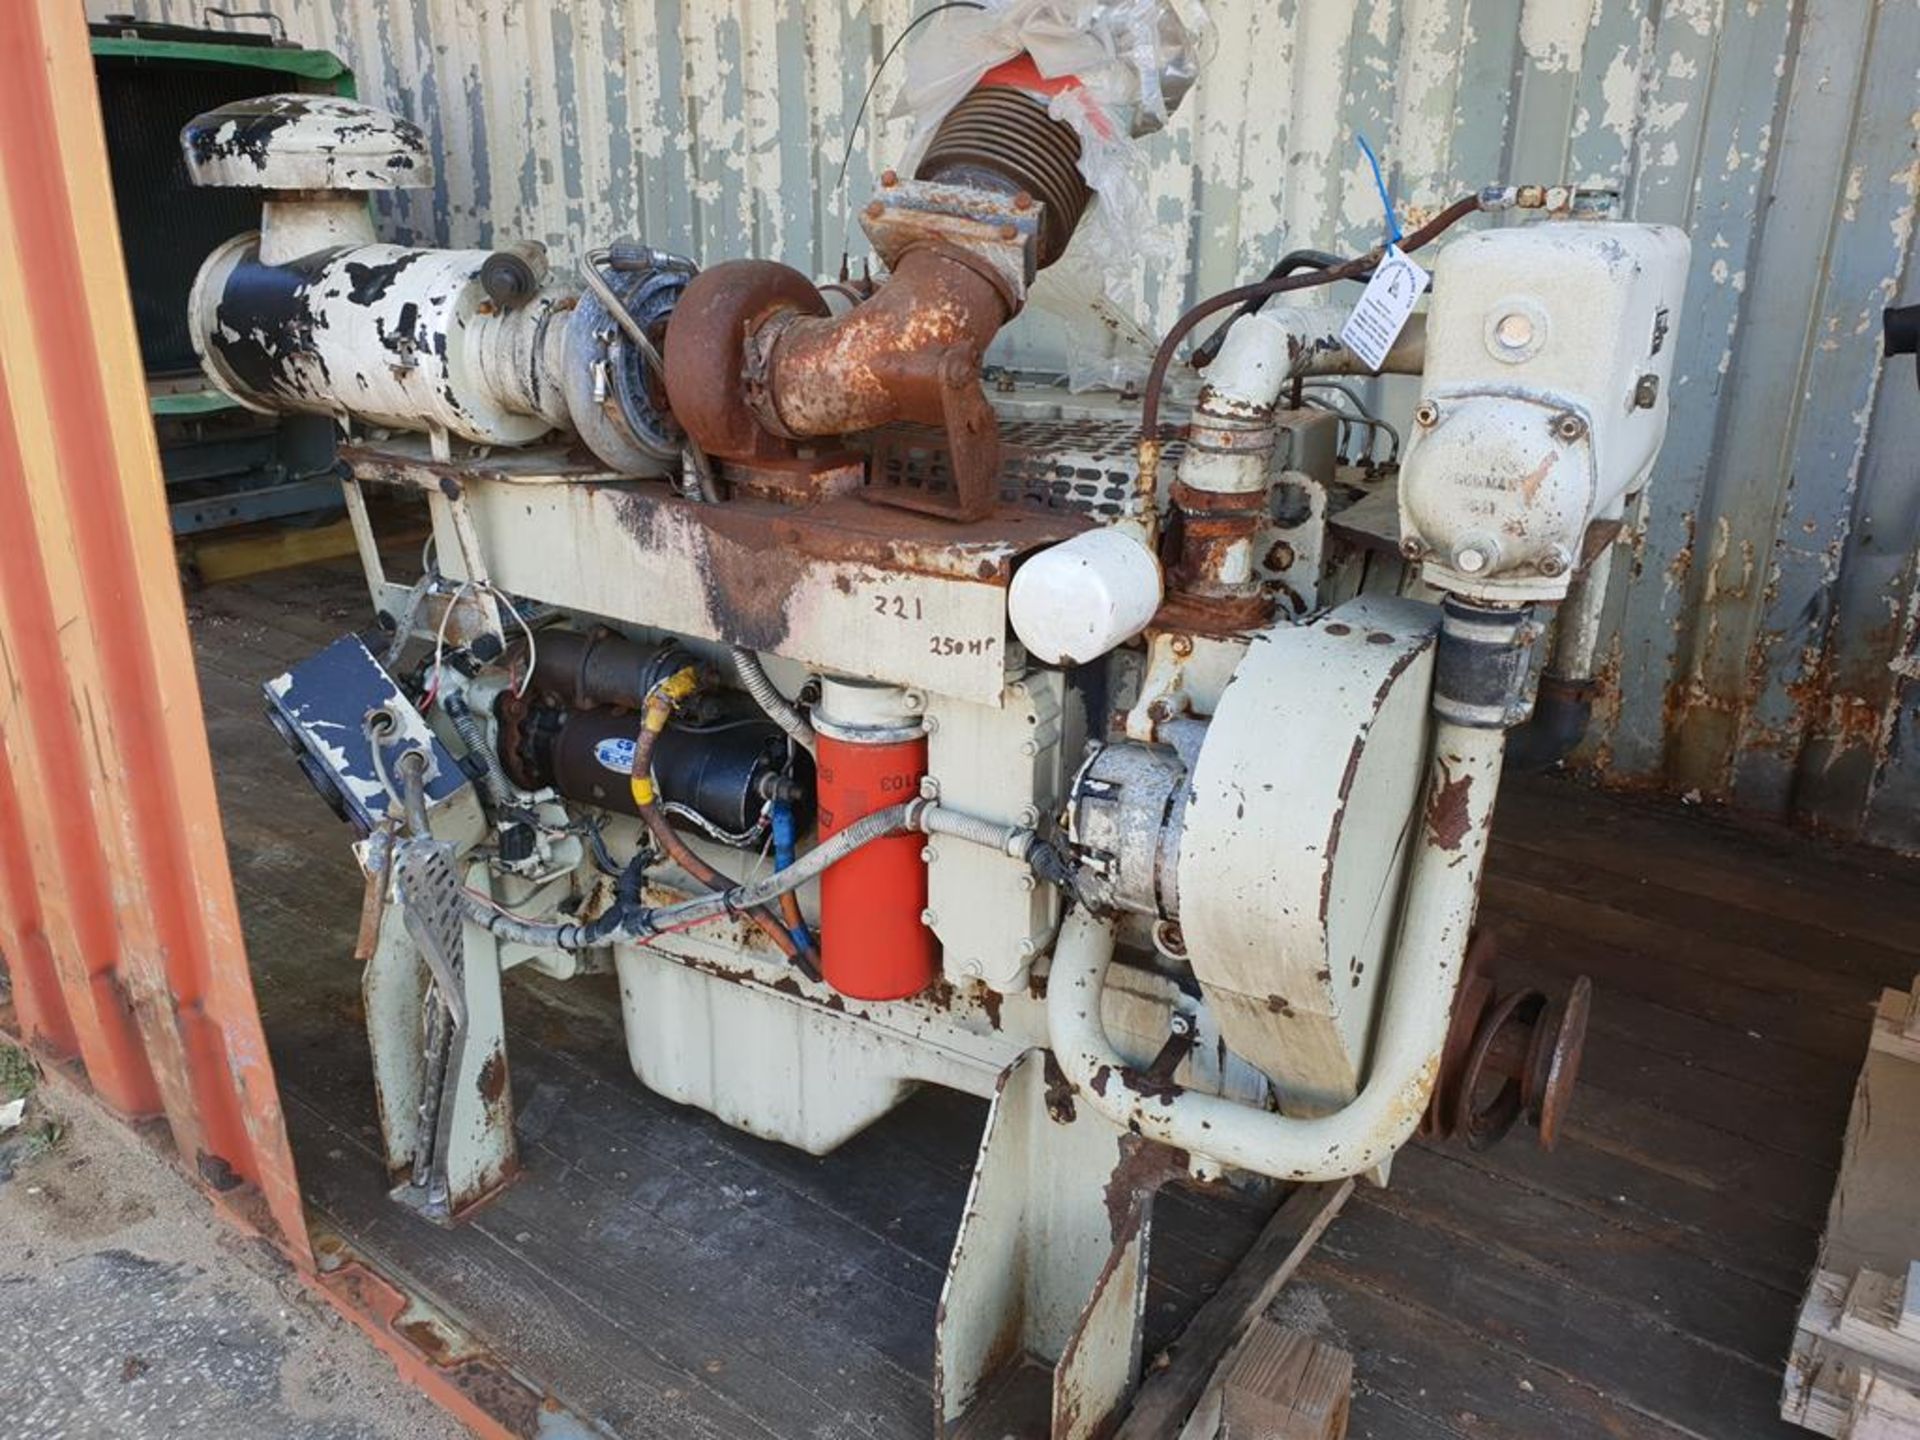 * Cummins Model 6CT83-6 Marine Diesel Engine, s/n 21254421; 241hp @ 1500 rpm. Please note this lot